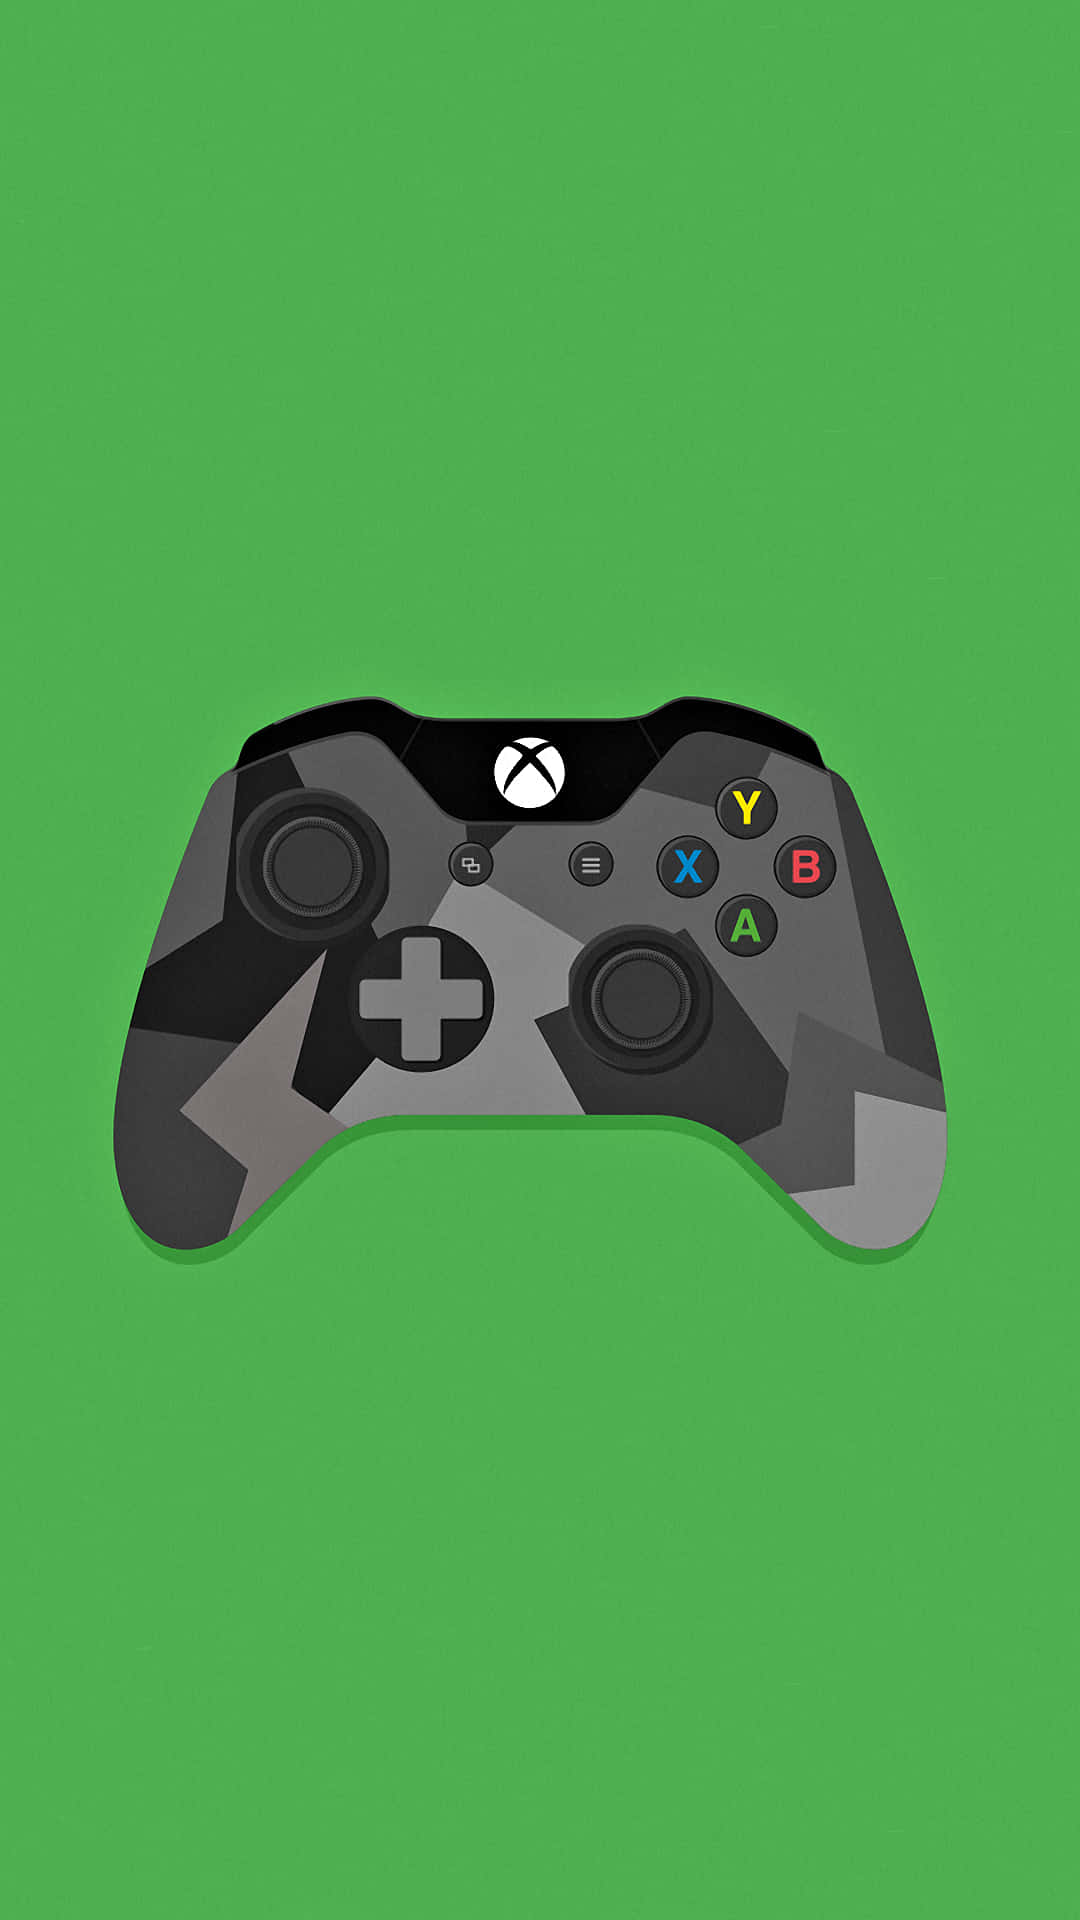 Xbox One Controller - Xbox One Controller - Xbox One Controller - Xbox One Controller - Xbox One Background